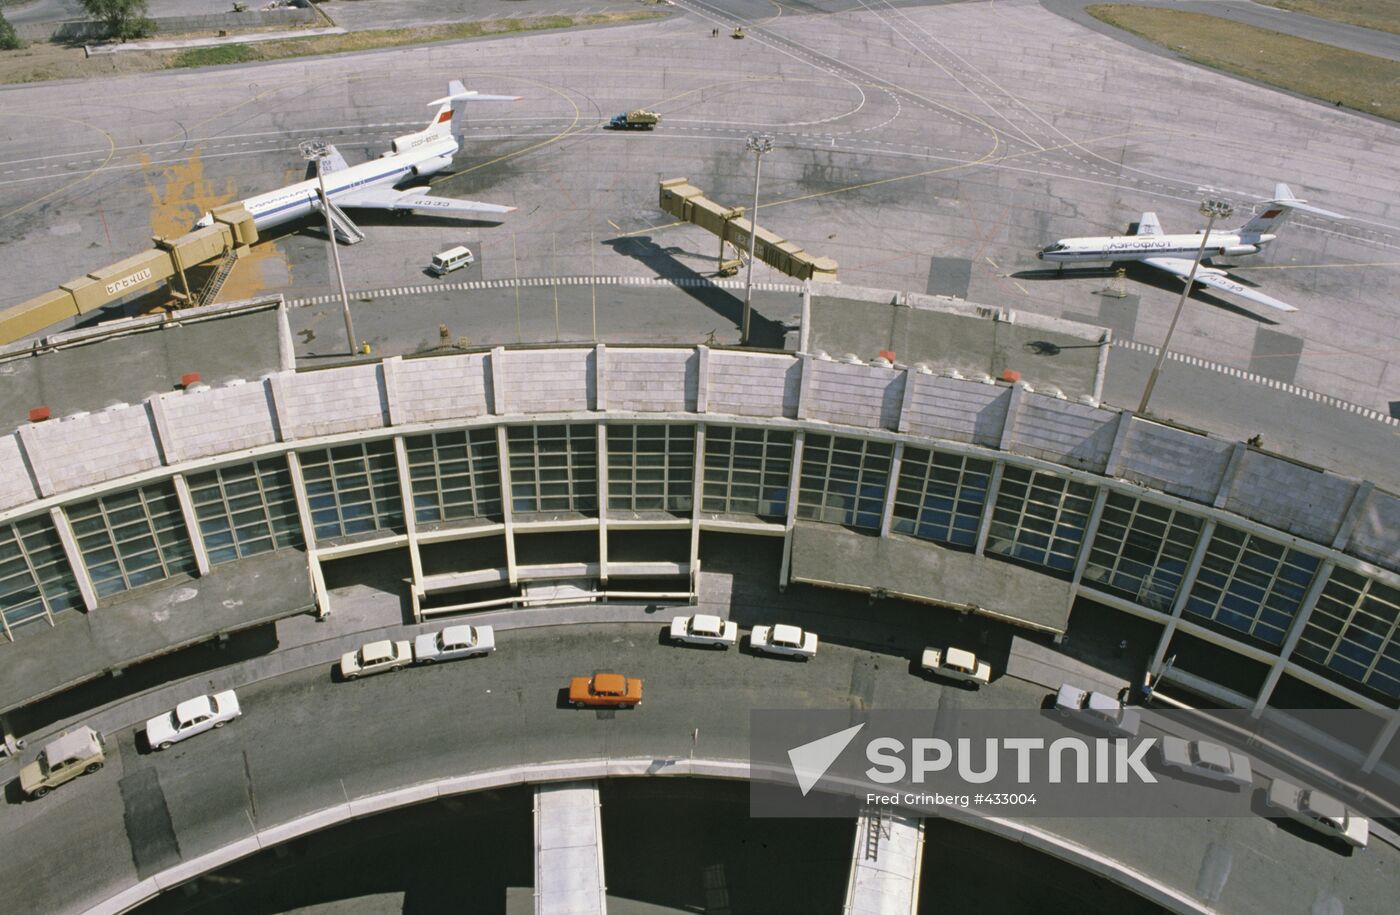 Zvartnots international airport